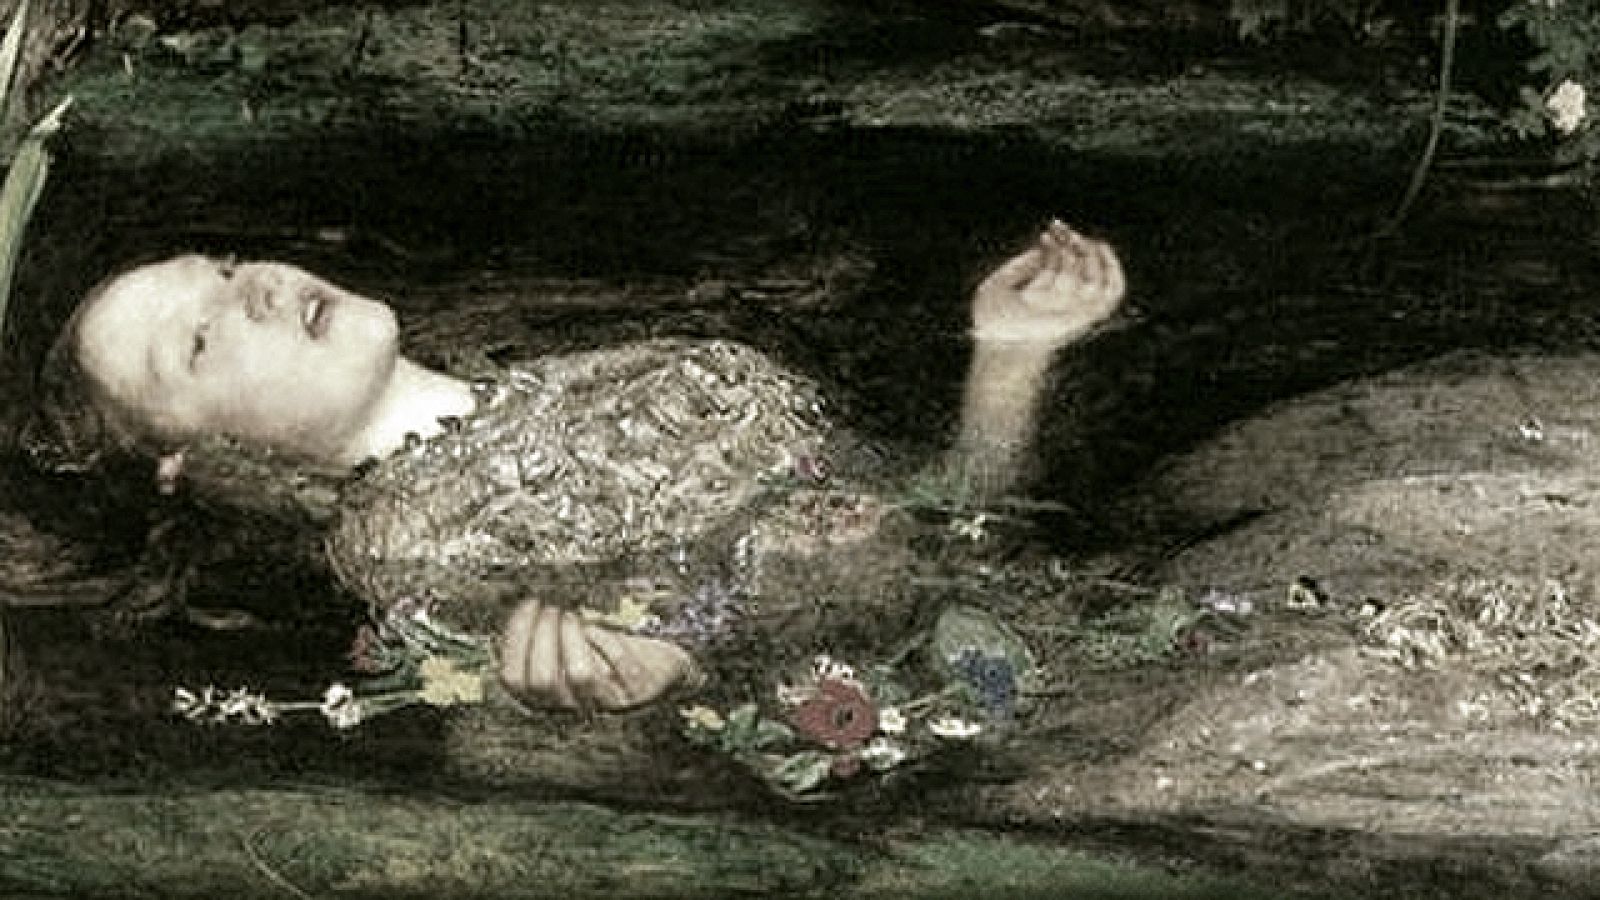 'Ofelia', Jhon Everett Millais